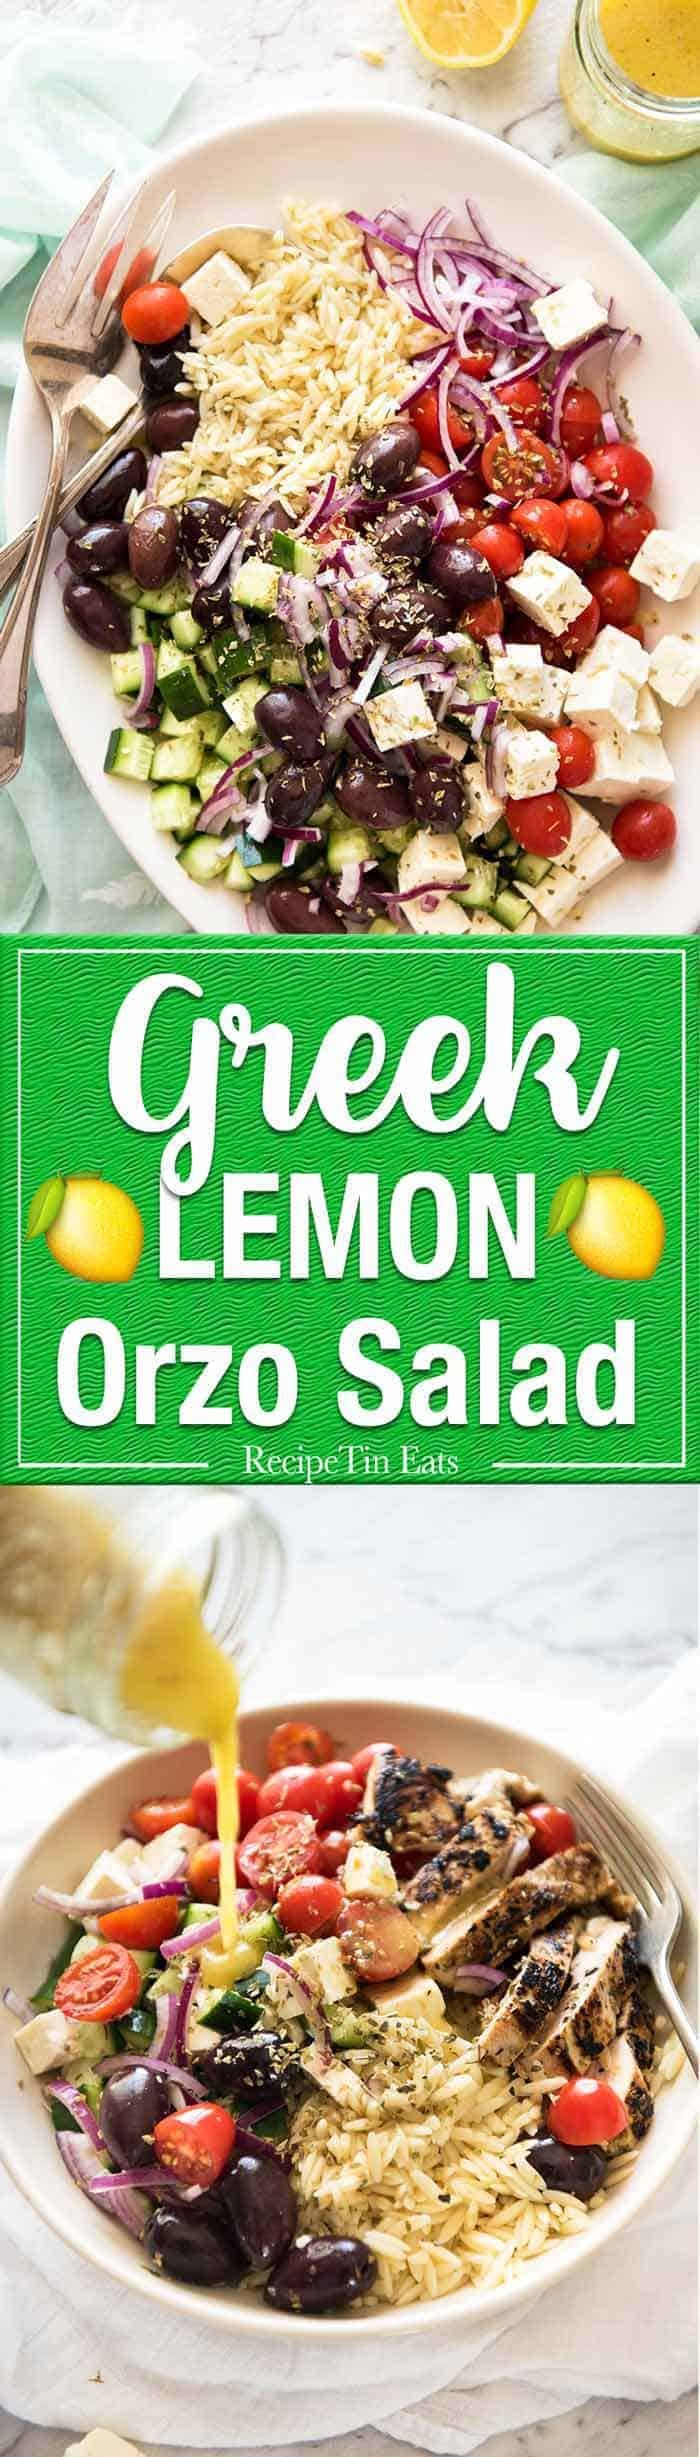 希腊柠檬沙拉(Risoni):希腊沙拉的所有配菜都拌入希腊柠檬沙拉或Risoni中，再配上美味的柠檬醋汁。www.dibingkai.com.gydF4y2Ba